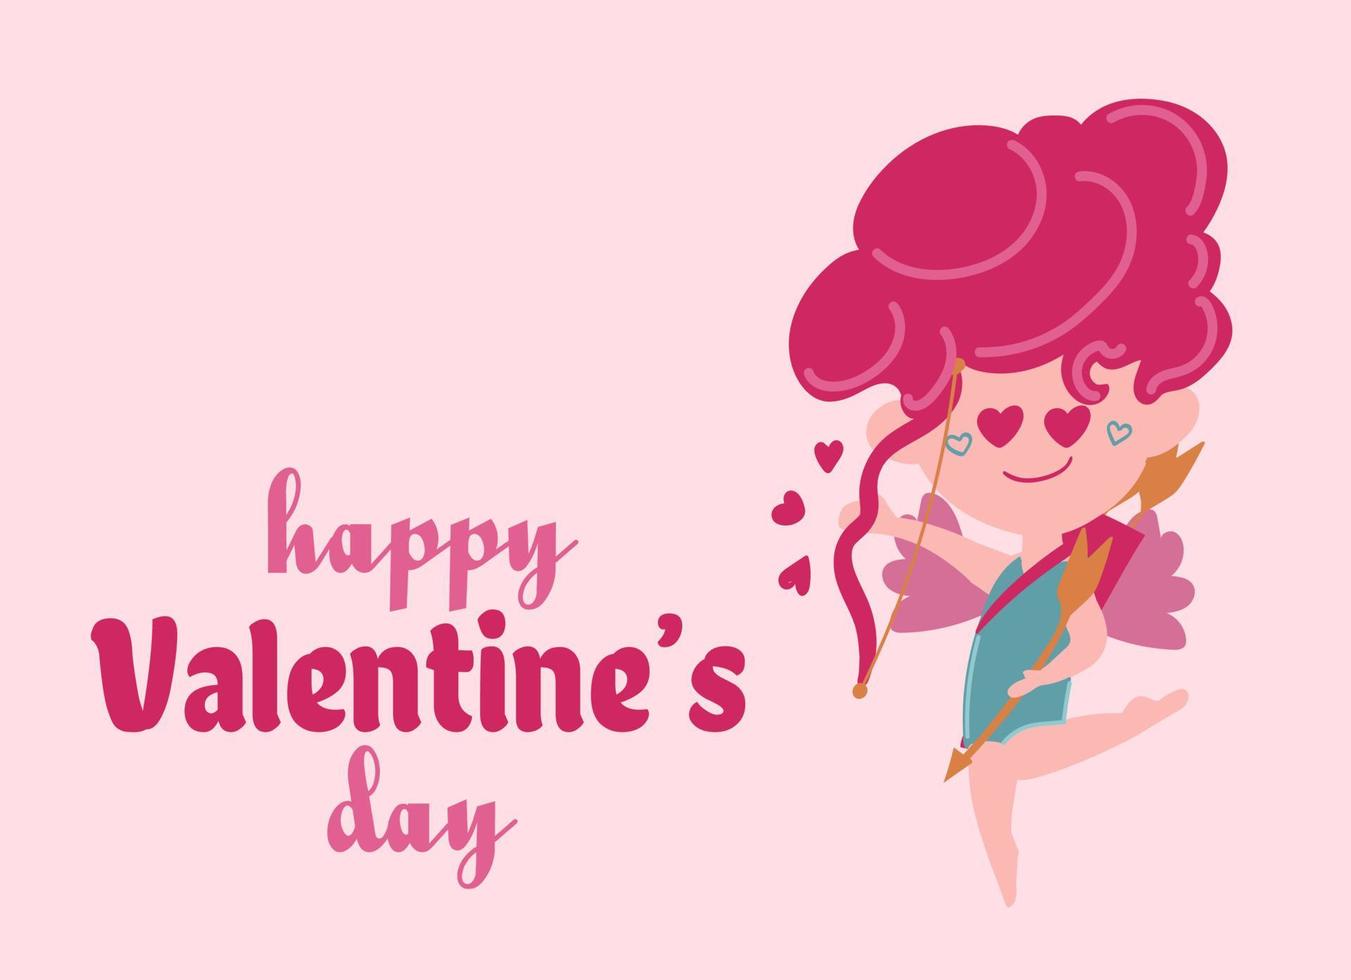 happy valentine s day poster mit engel amor, herzen und konfetti. festlicher hintergrund für den 14. februar mit handbeschriftung. Vektordesign für Postkarten, Werbematerial, Websites. vektor